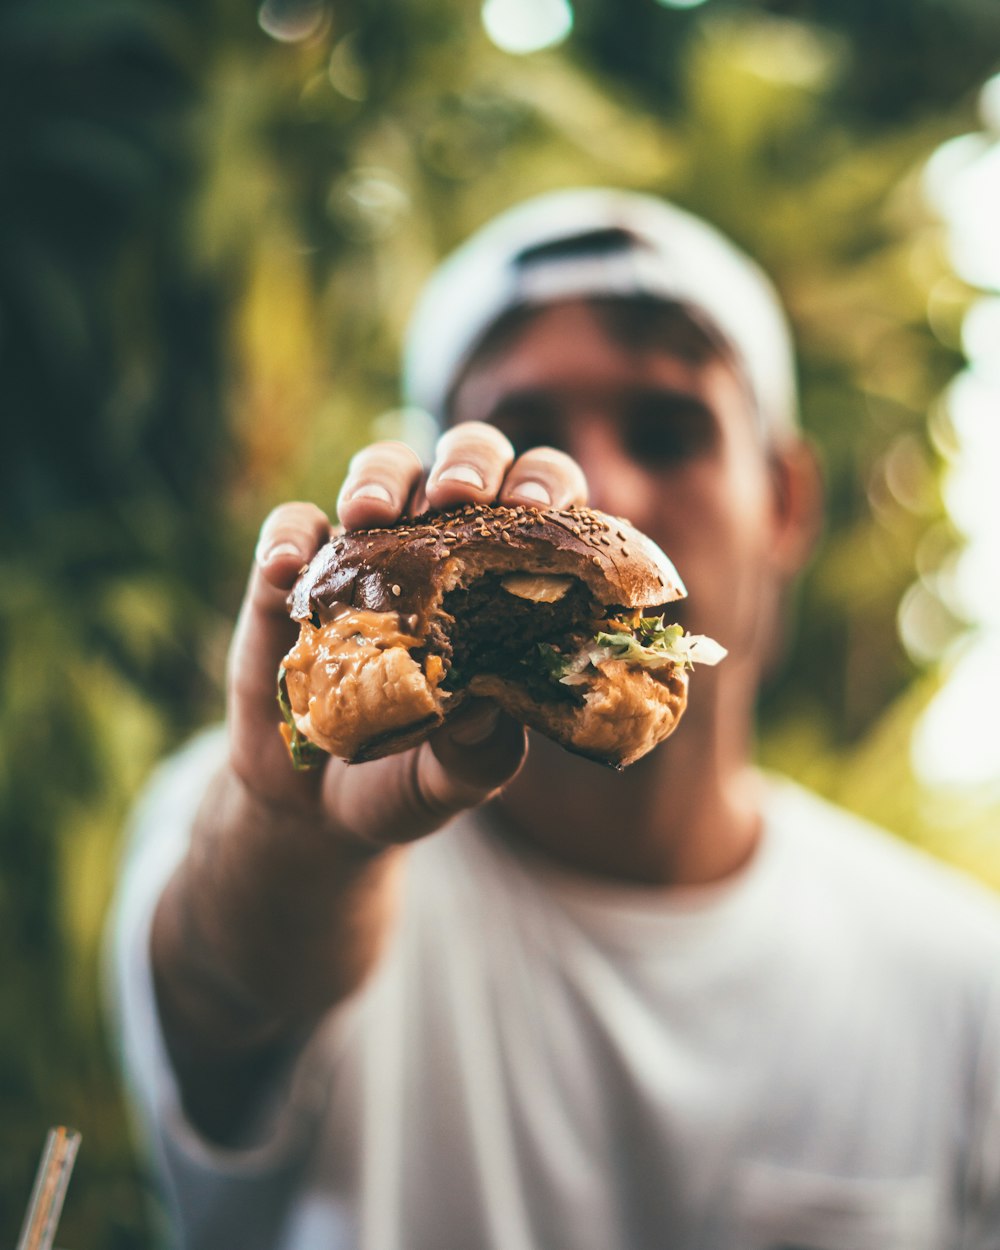 食べたハンバーガーを手にした男性のセレクティブフォーカス写真